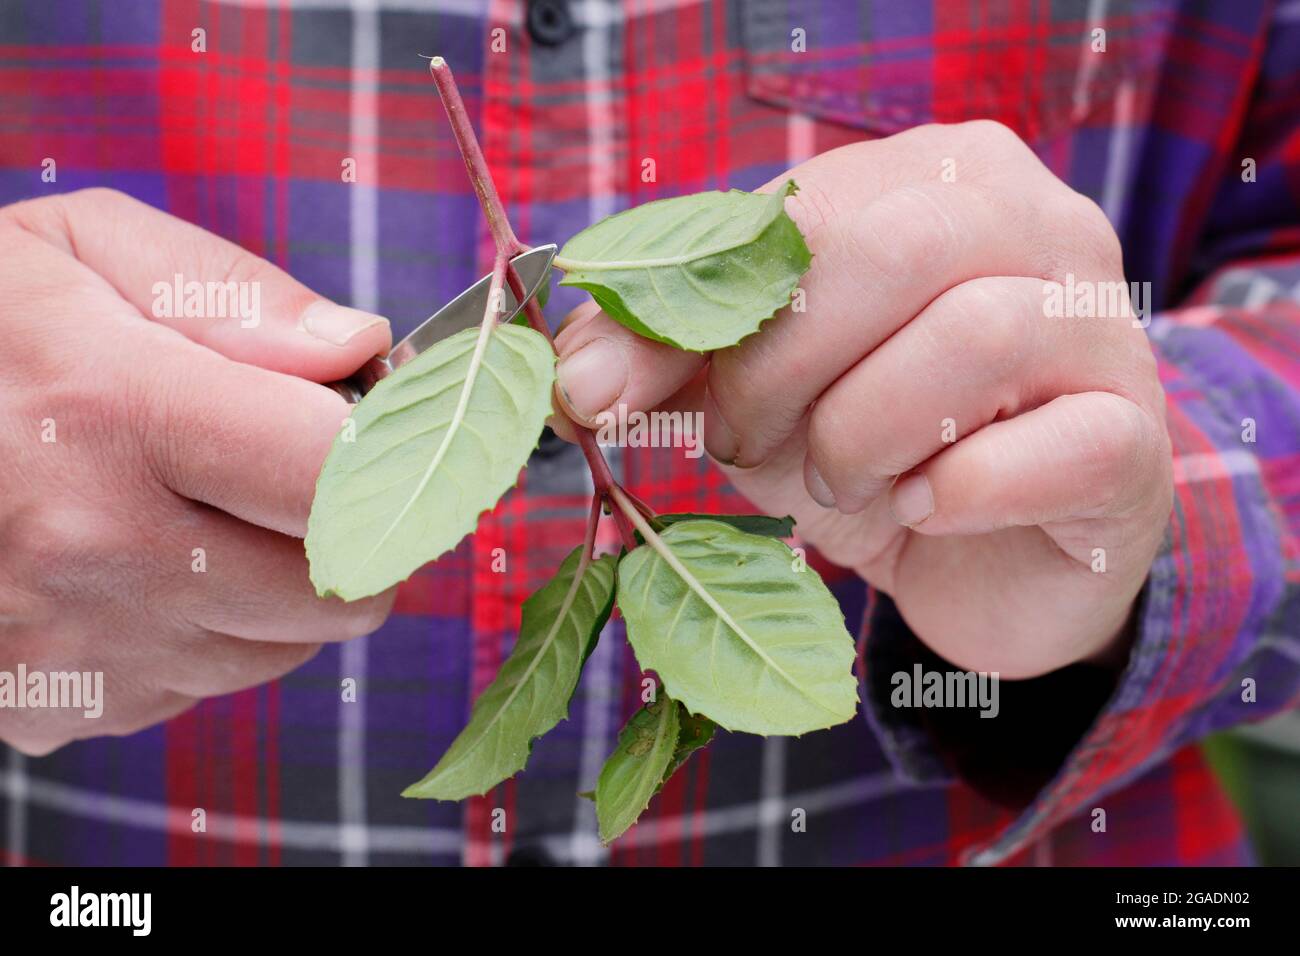 Prise de boutures fuchsia. Suppression des feuilles inférieures d'une coupe fuchsia pour la propagation. ROYAUME-UNI Banque D'Images